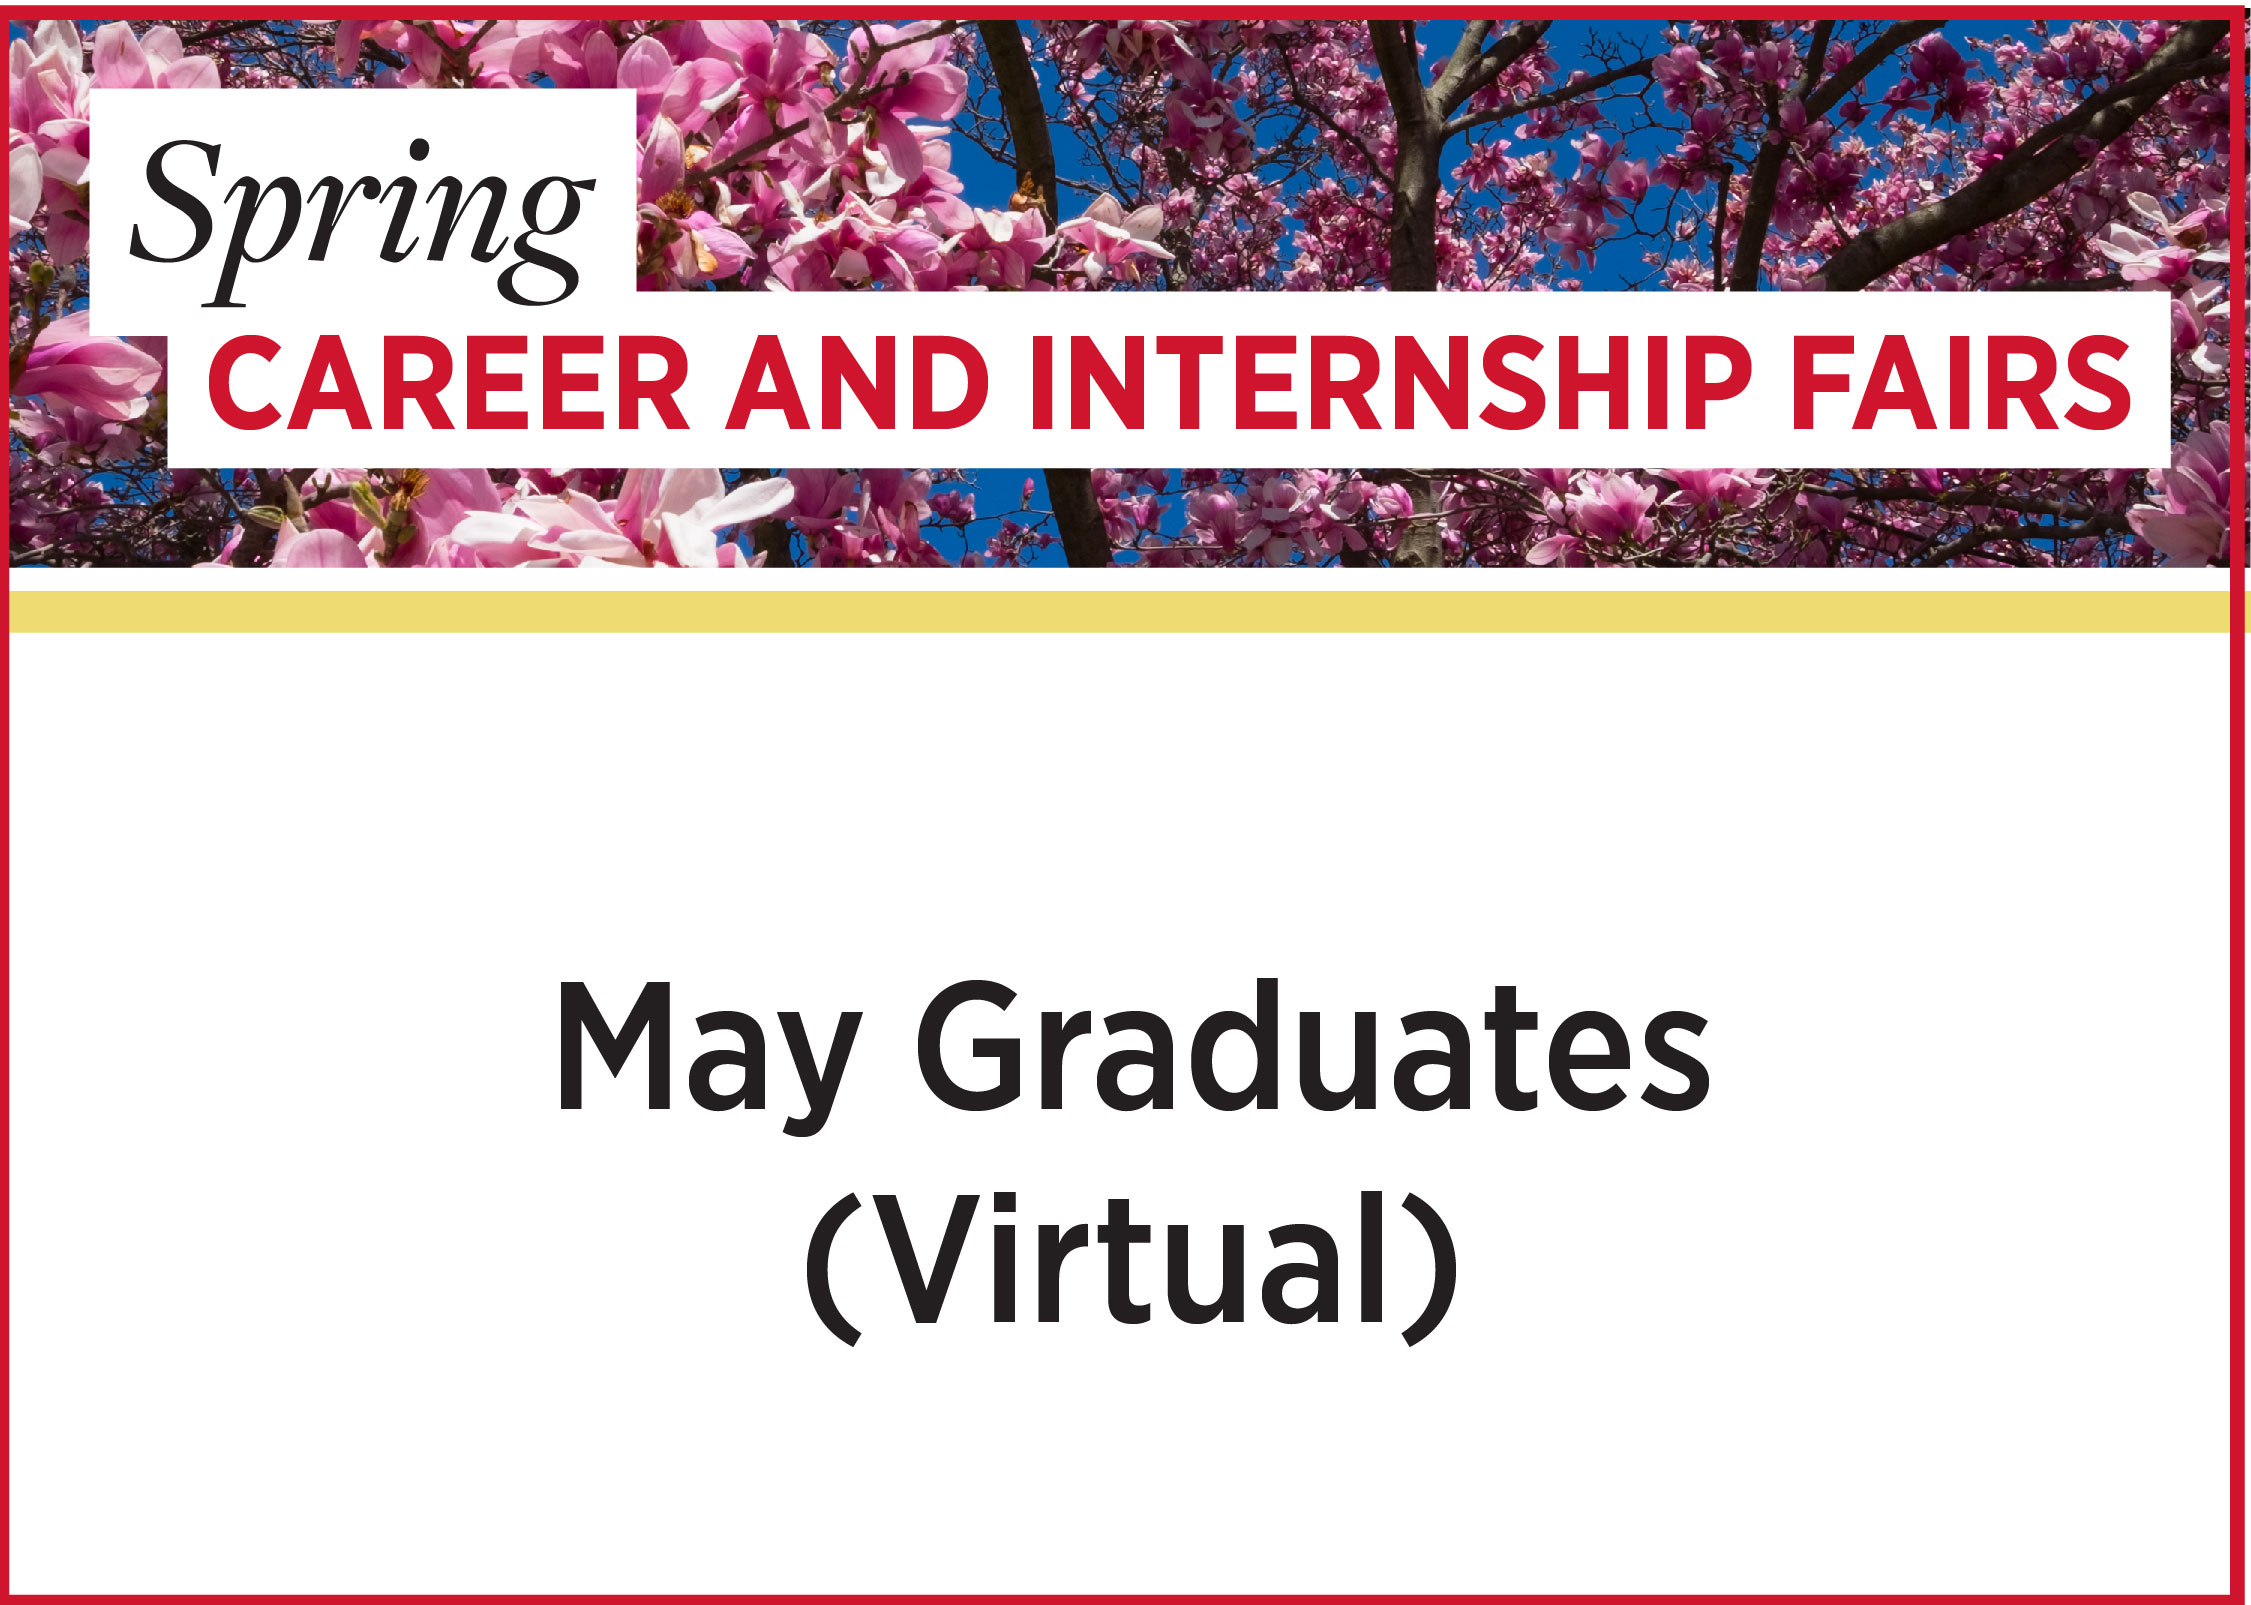 Spring Career and Internship Fairs - May Graduates (Virtual)